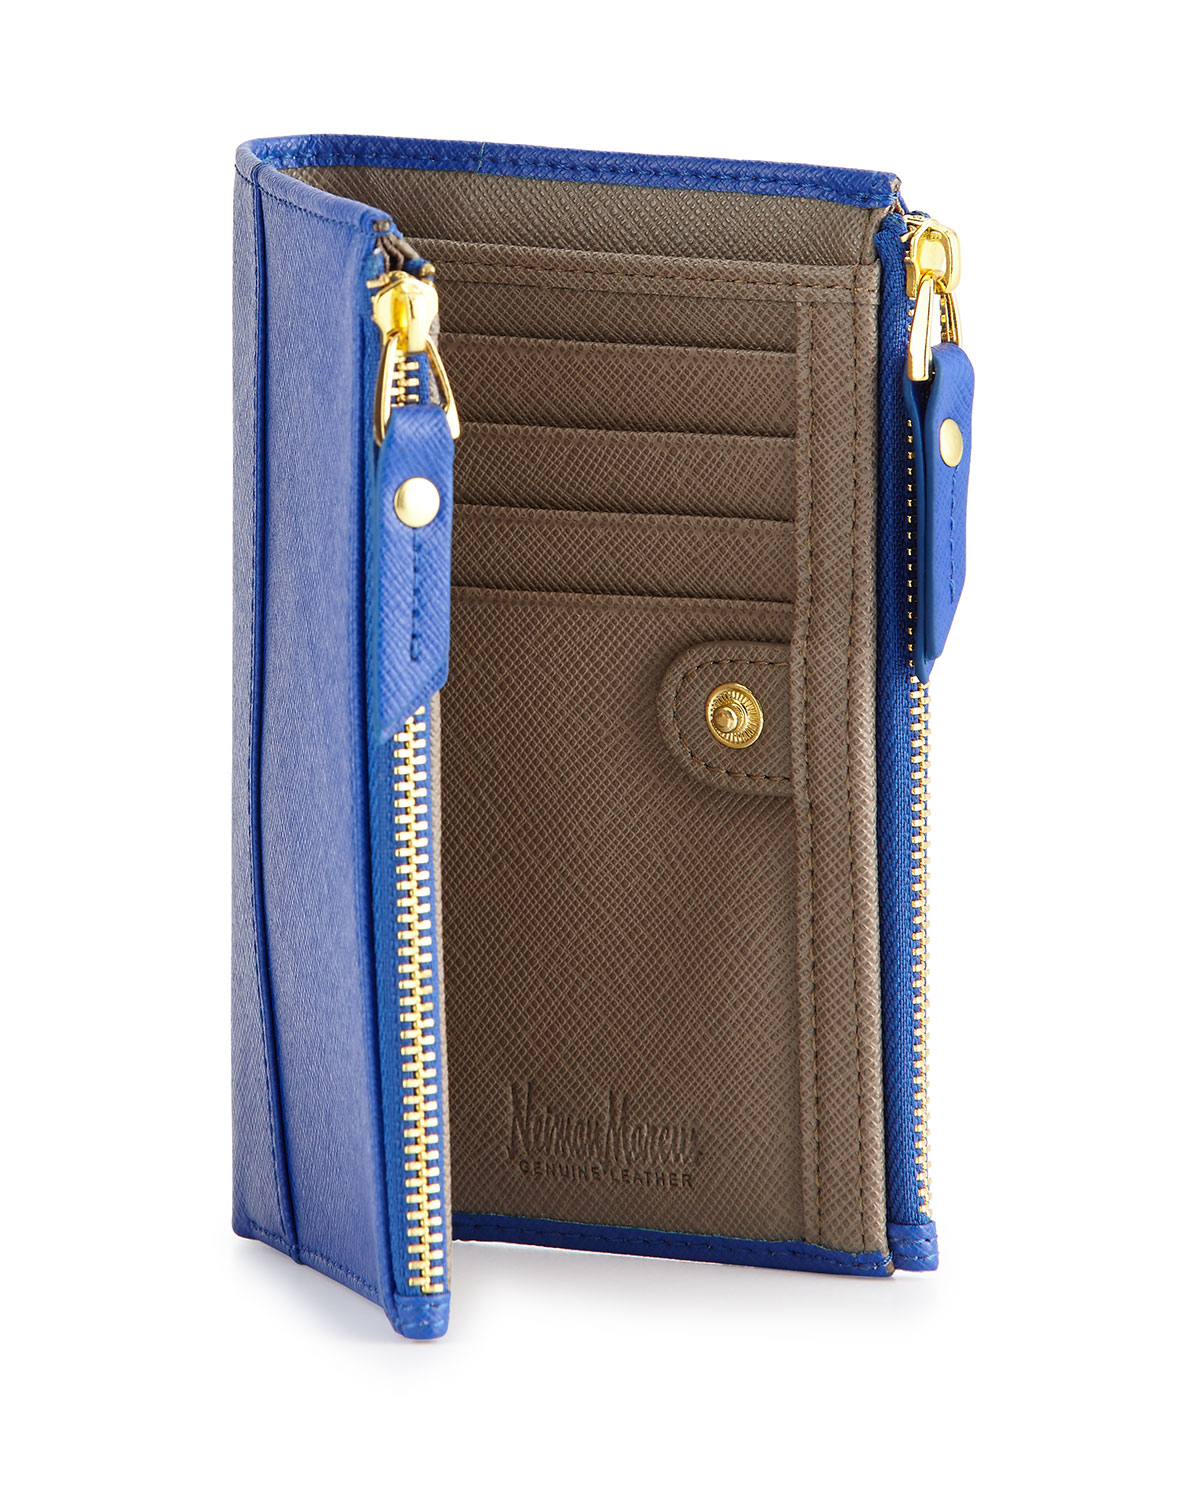 Lyst - Neiman Marcus Leather Double-zip Bi-fold Wallet in Blue